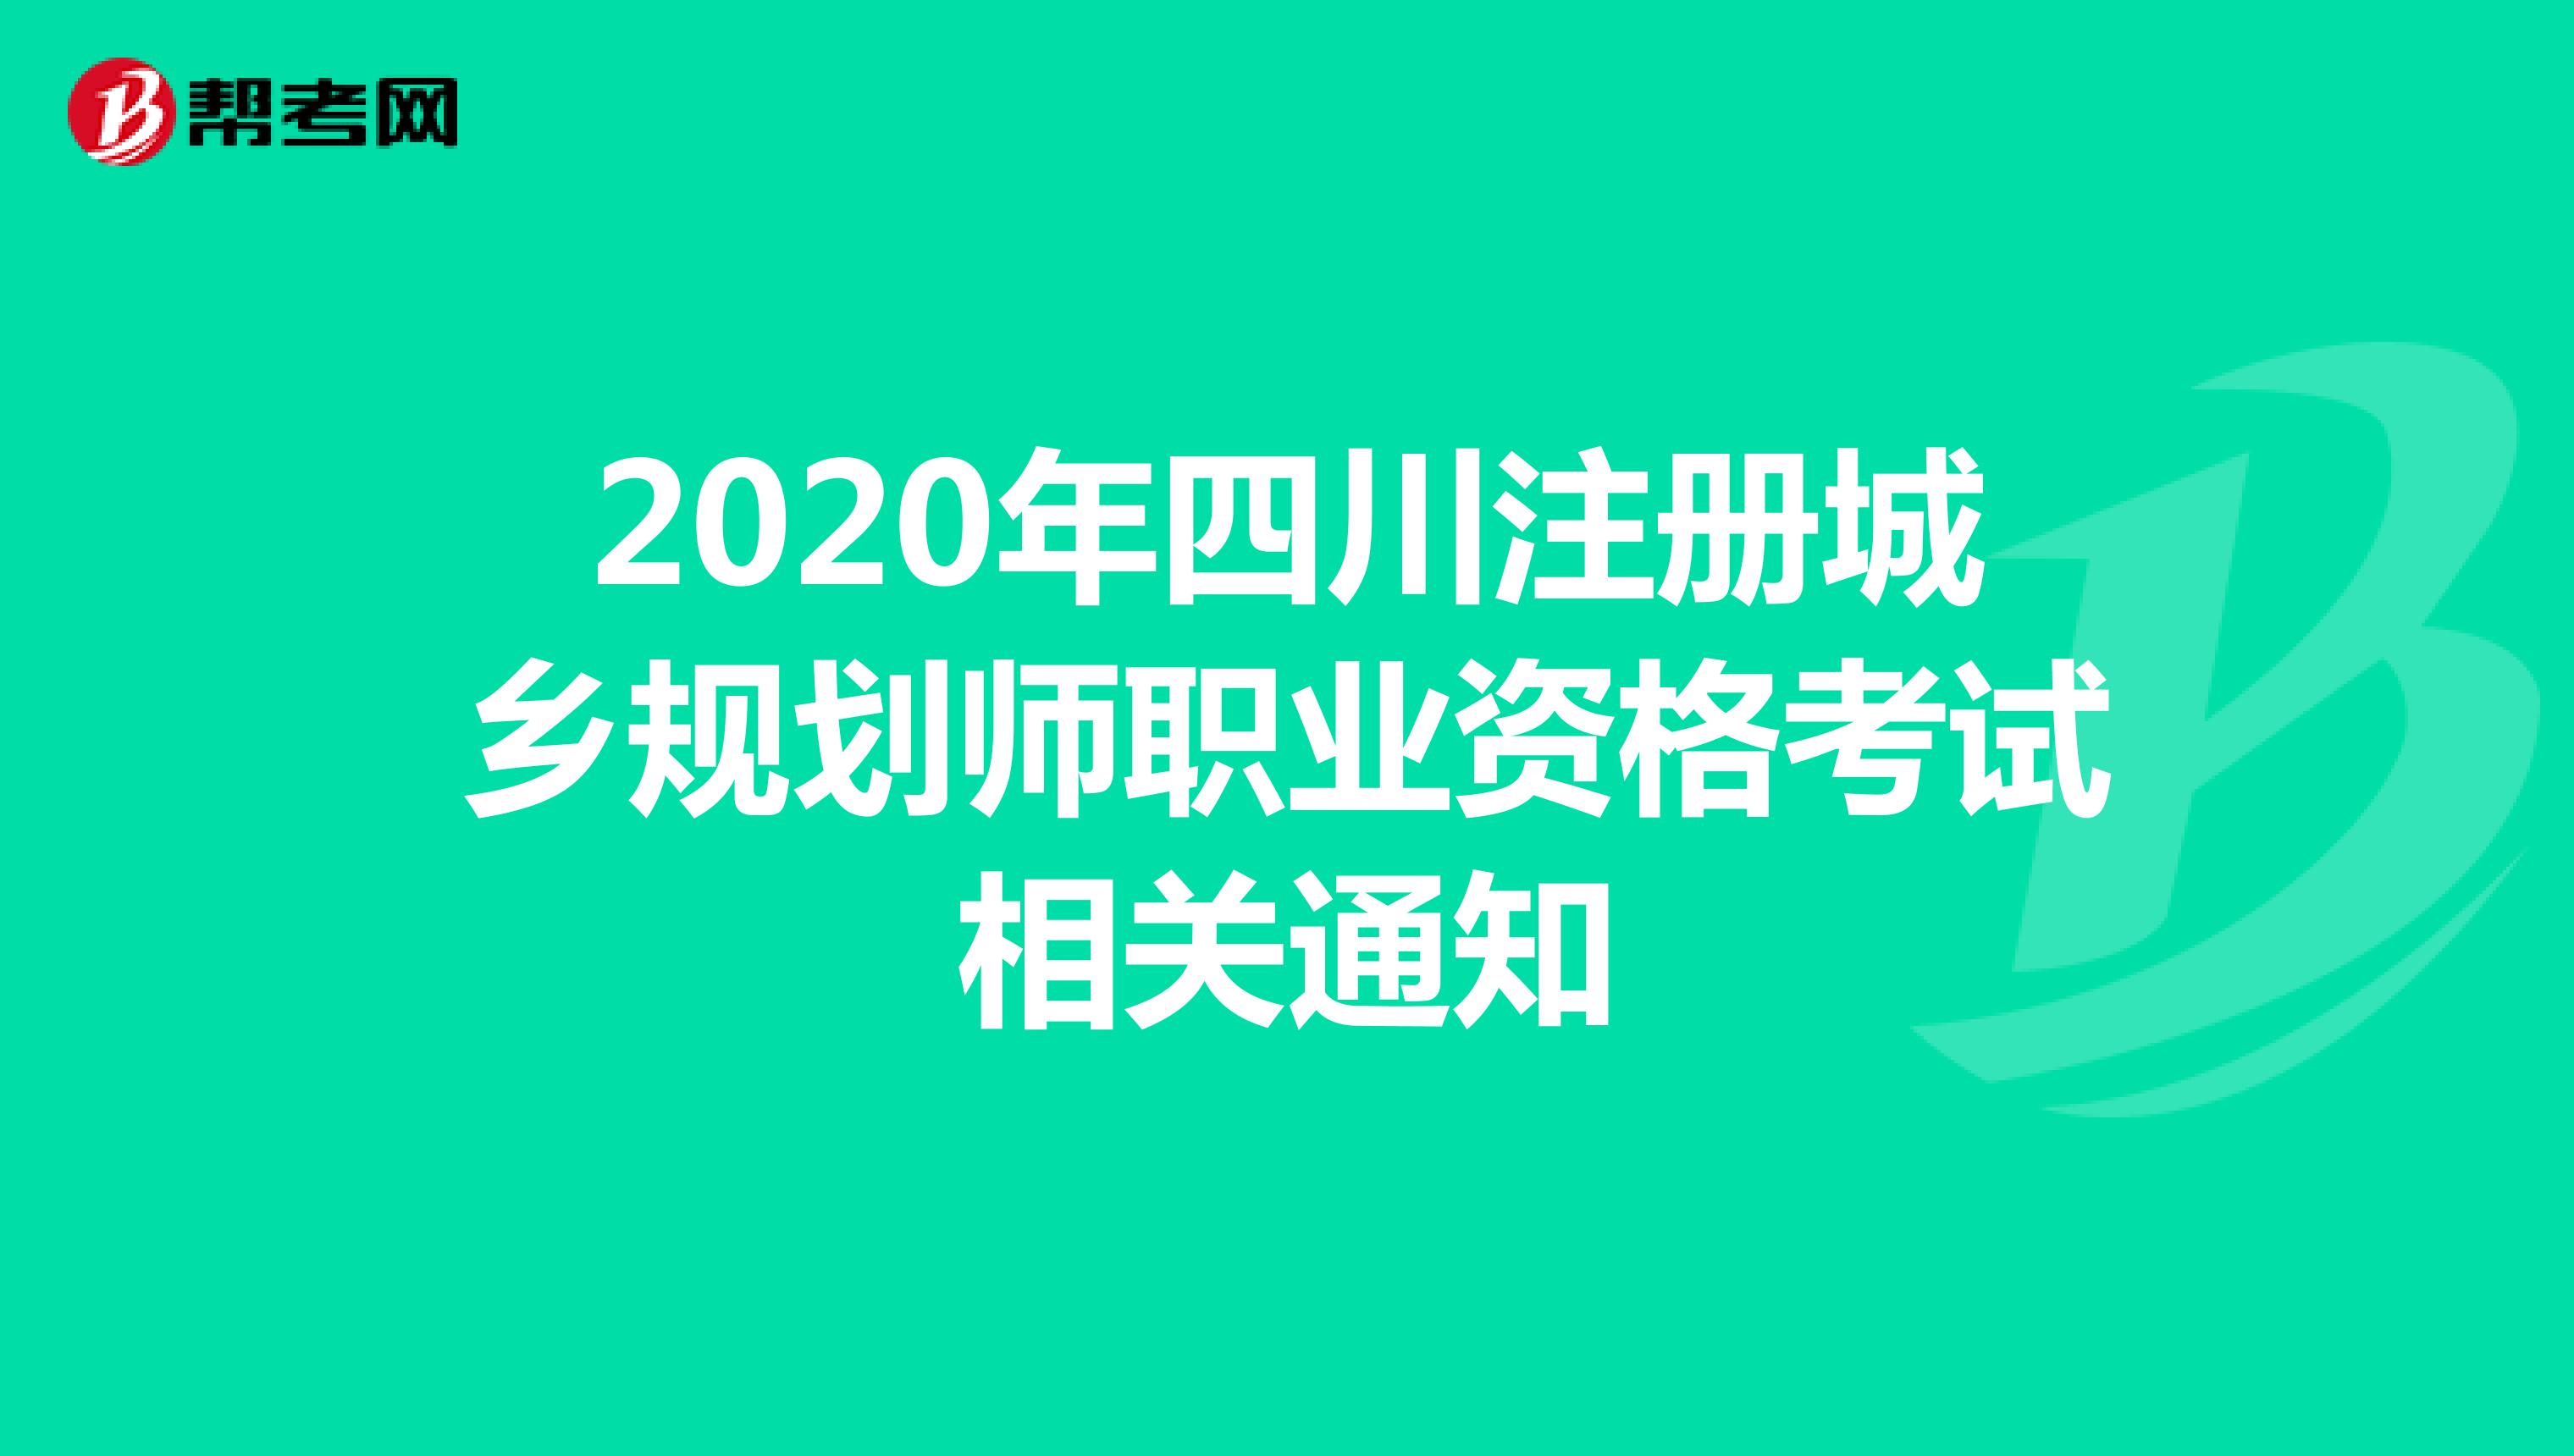 2020年四川注册城乡规划师职业资格考试相关通知